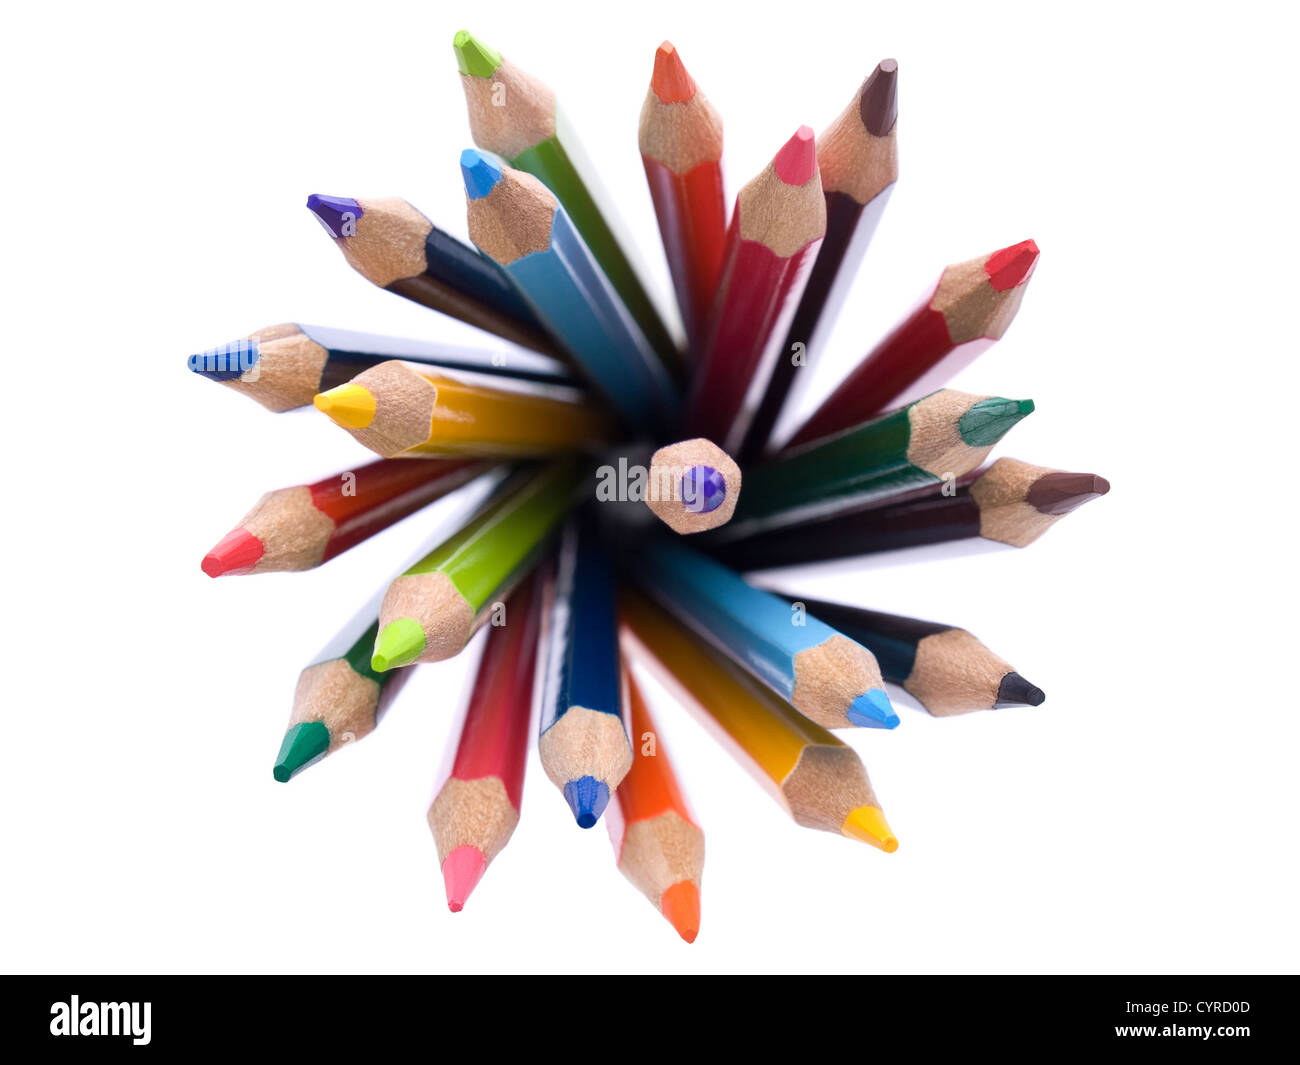 Vista superior del surtido de lápices de colores dispuestos en un círculo. Foto de stock